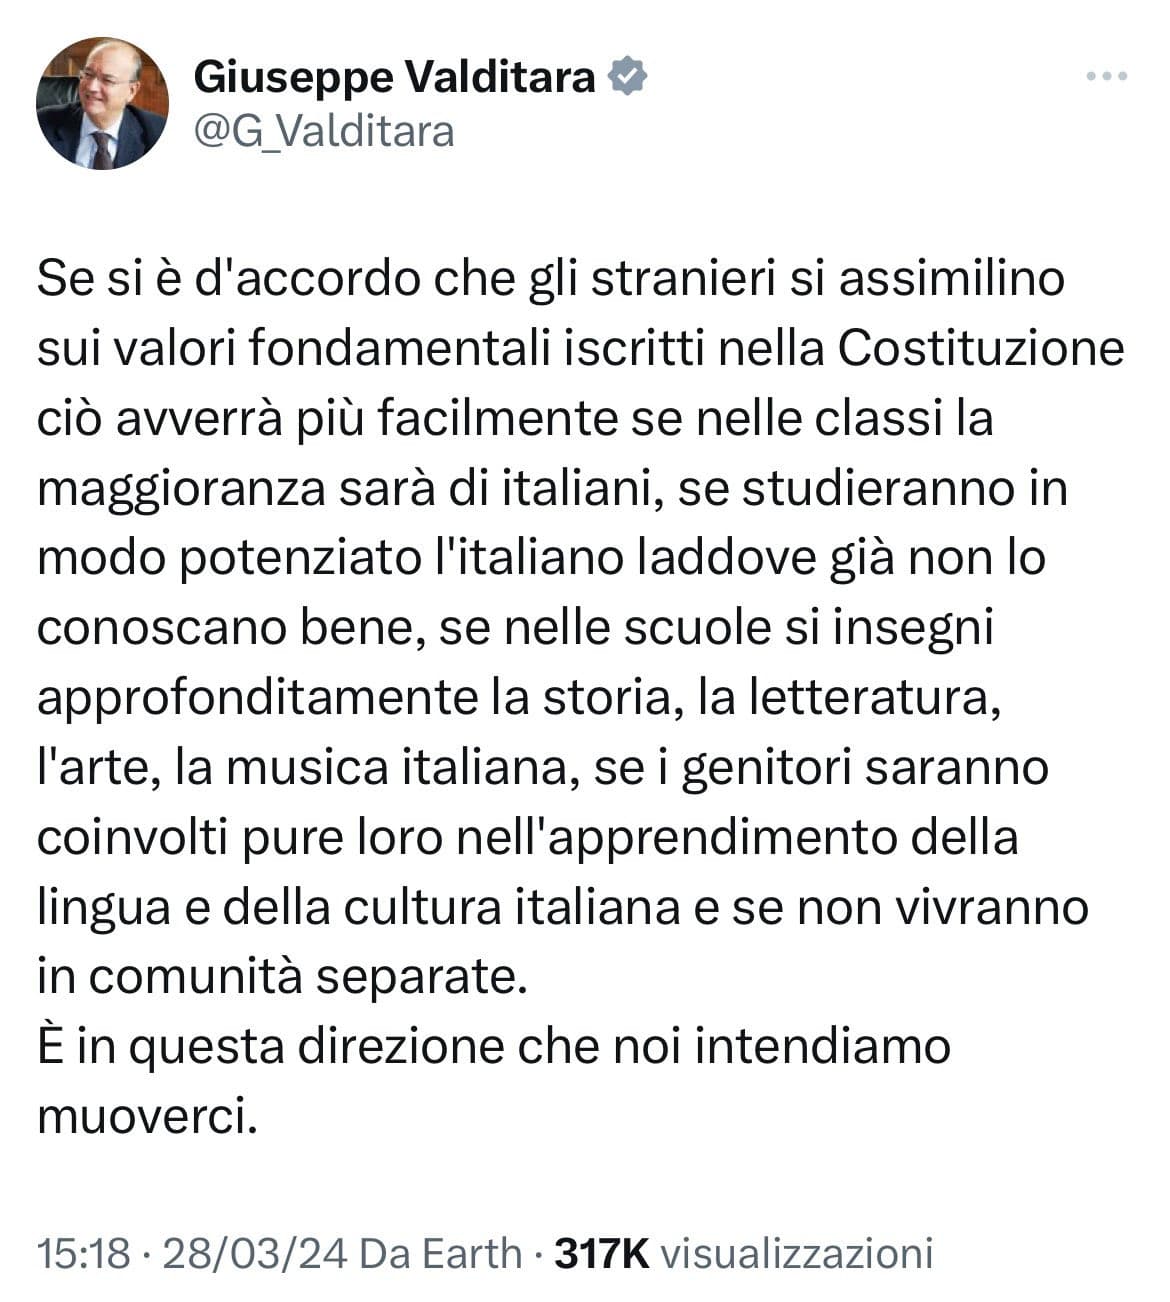 Valditara fa un post sgrammaticato e incomprensibile dove (forse) esorta gli stranieri a imparare lingua e cultura italiana per l'integrazione